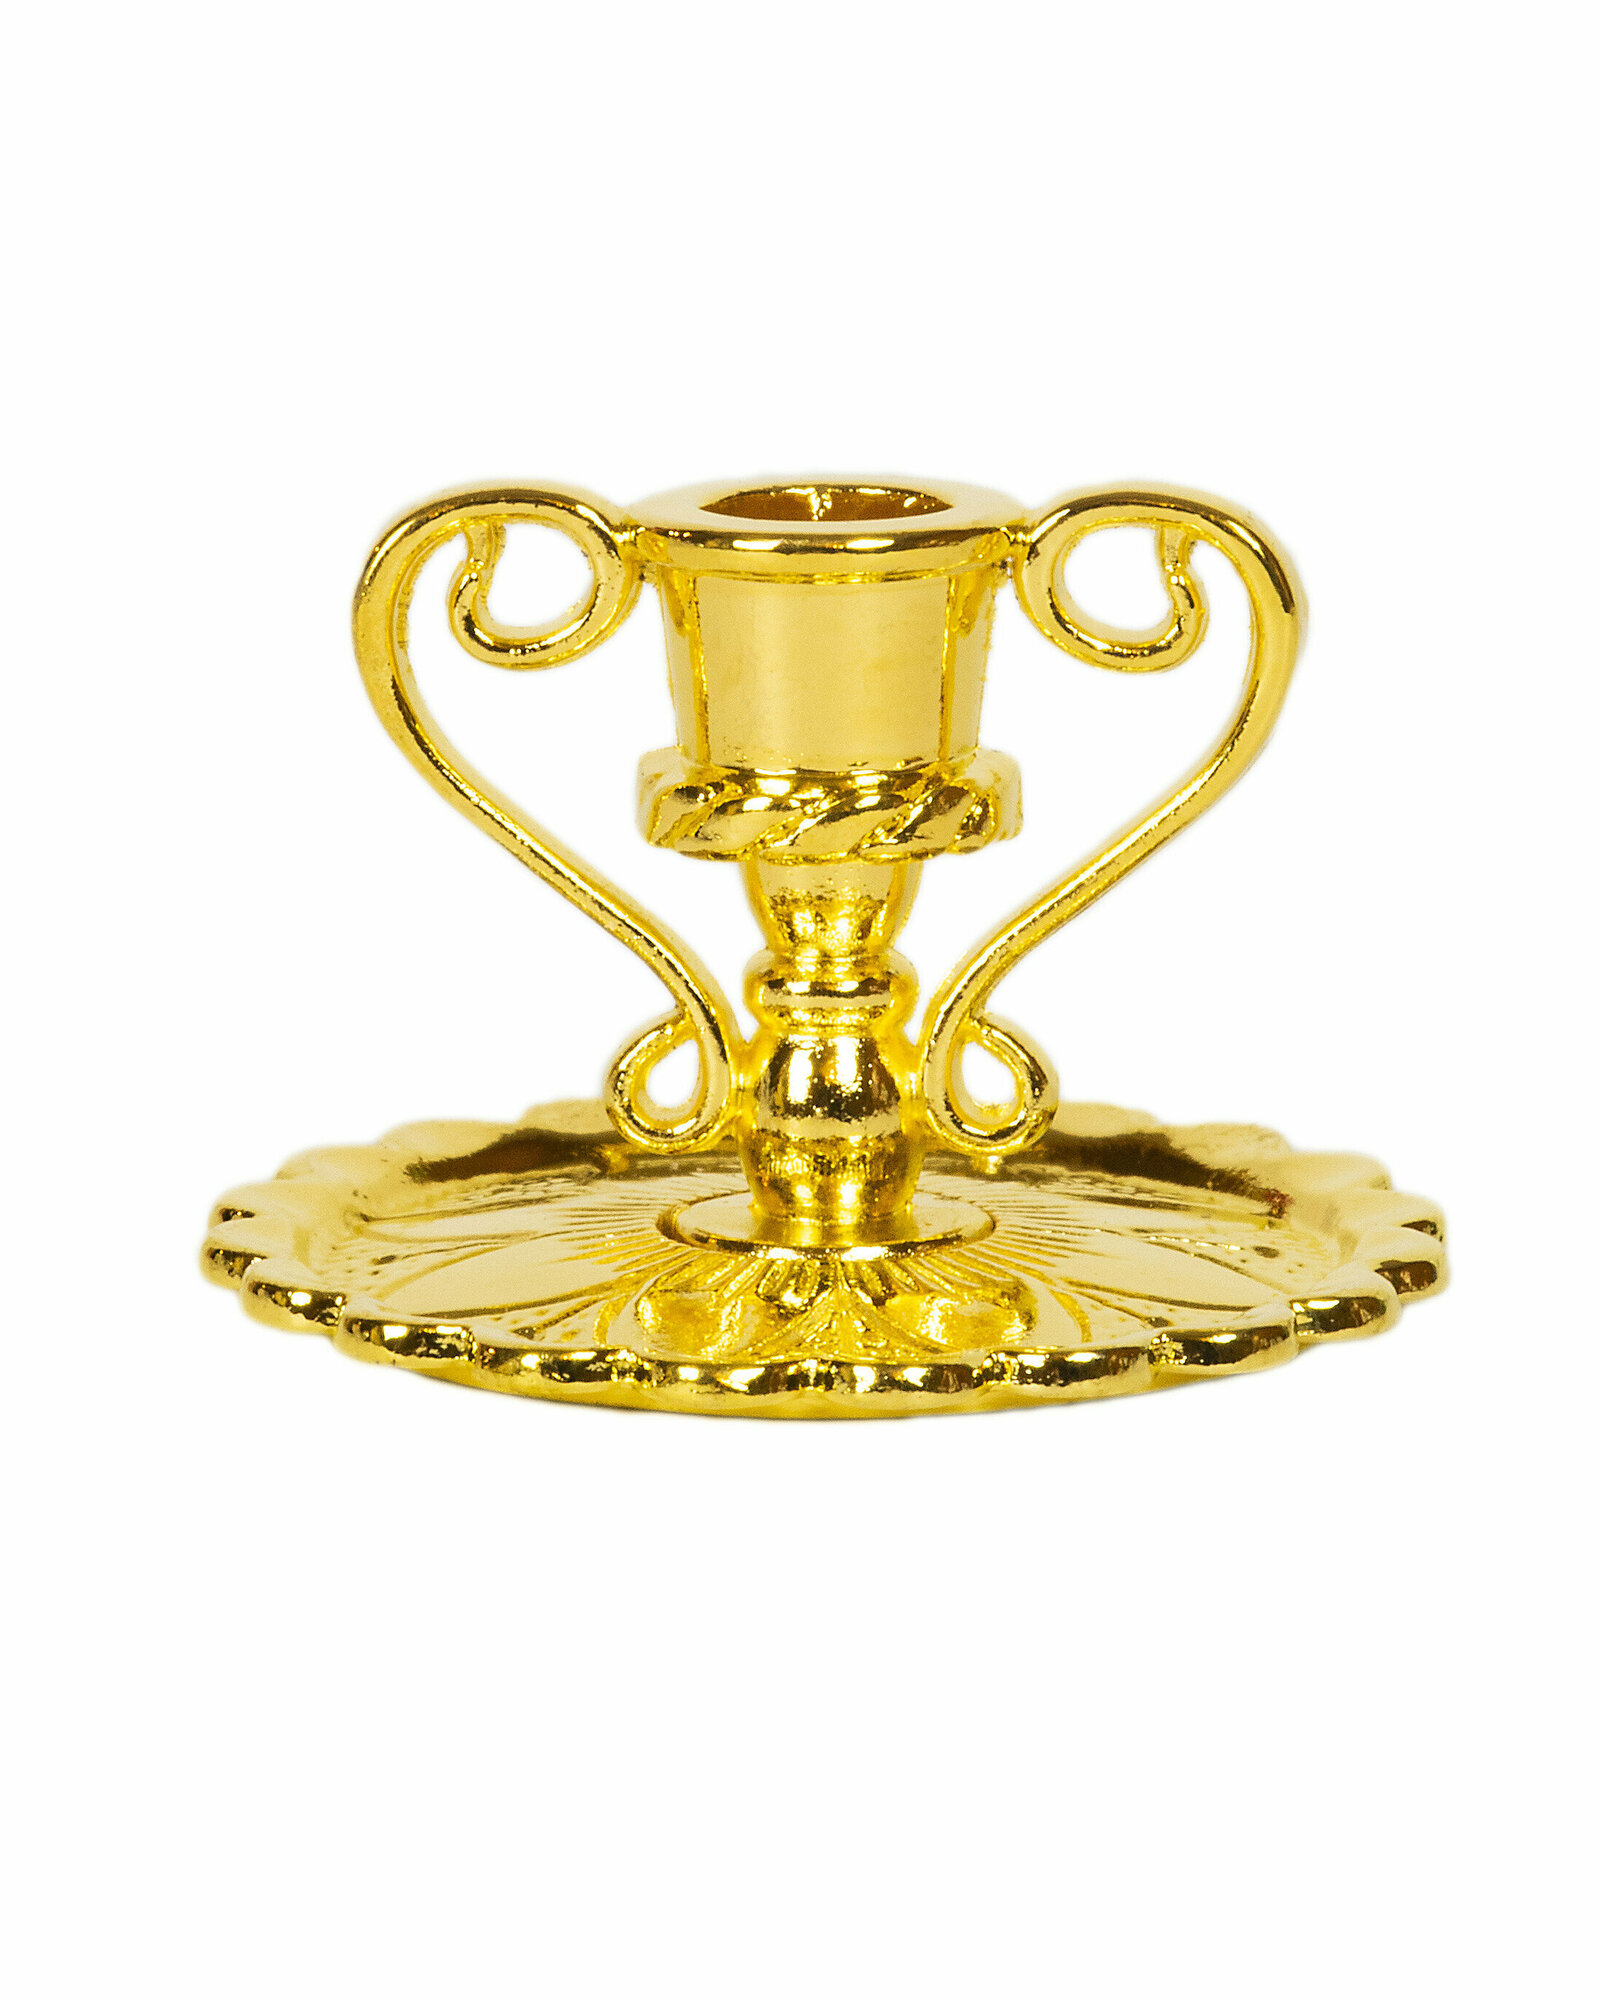 Подсвечник церковный металлический золото с ручками, подсвечник для свечи религиозный, d - 6 мм под свечу